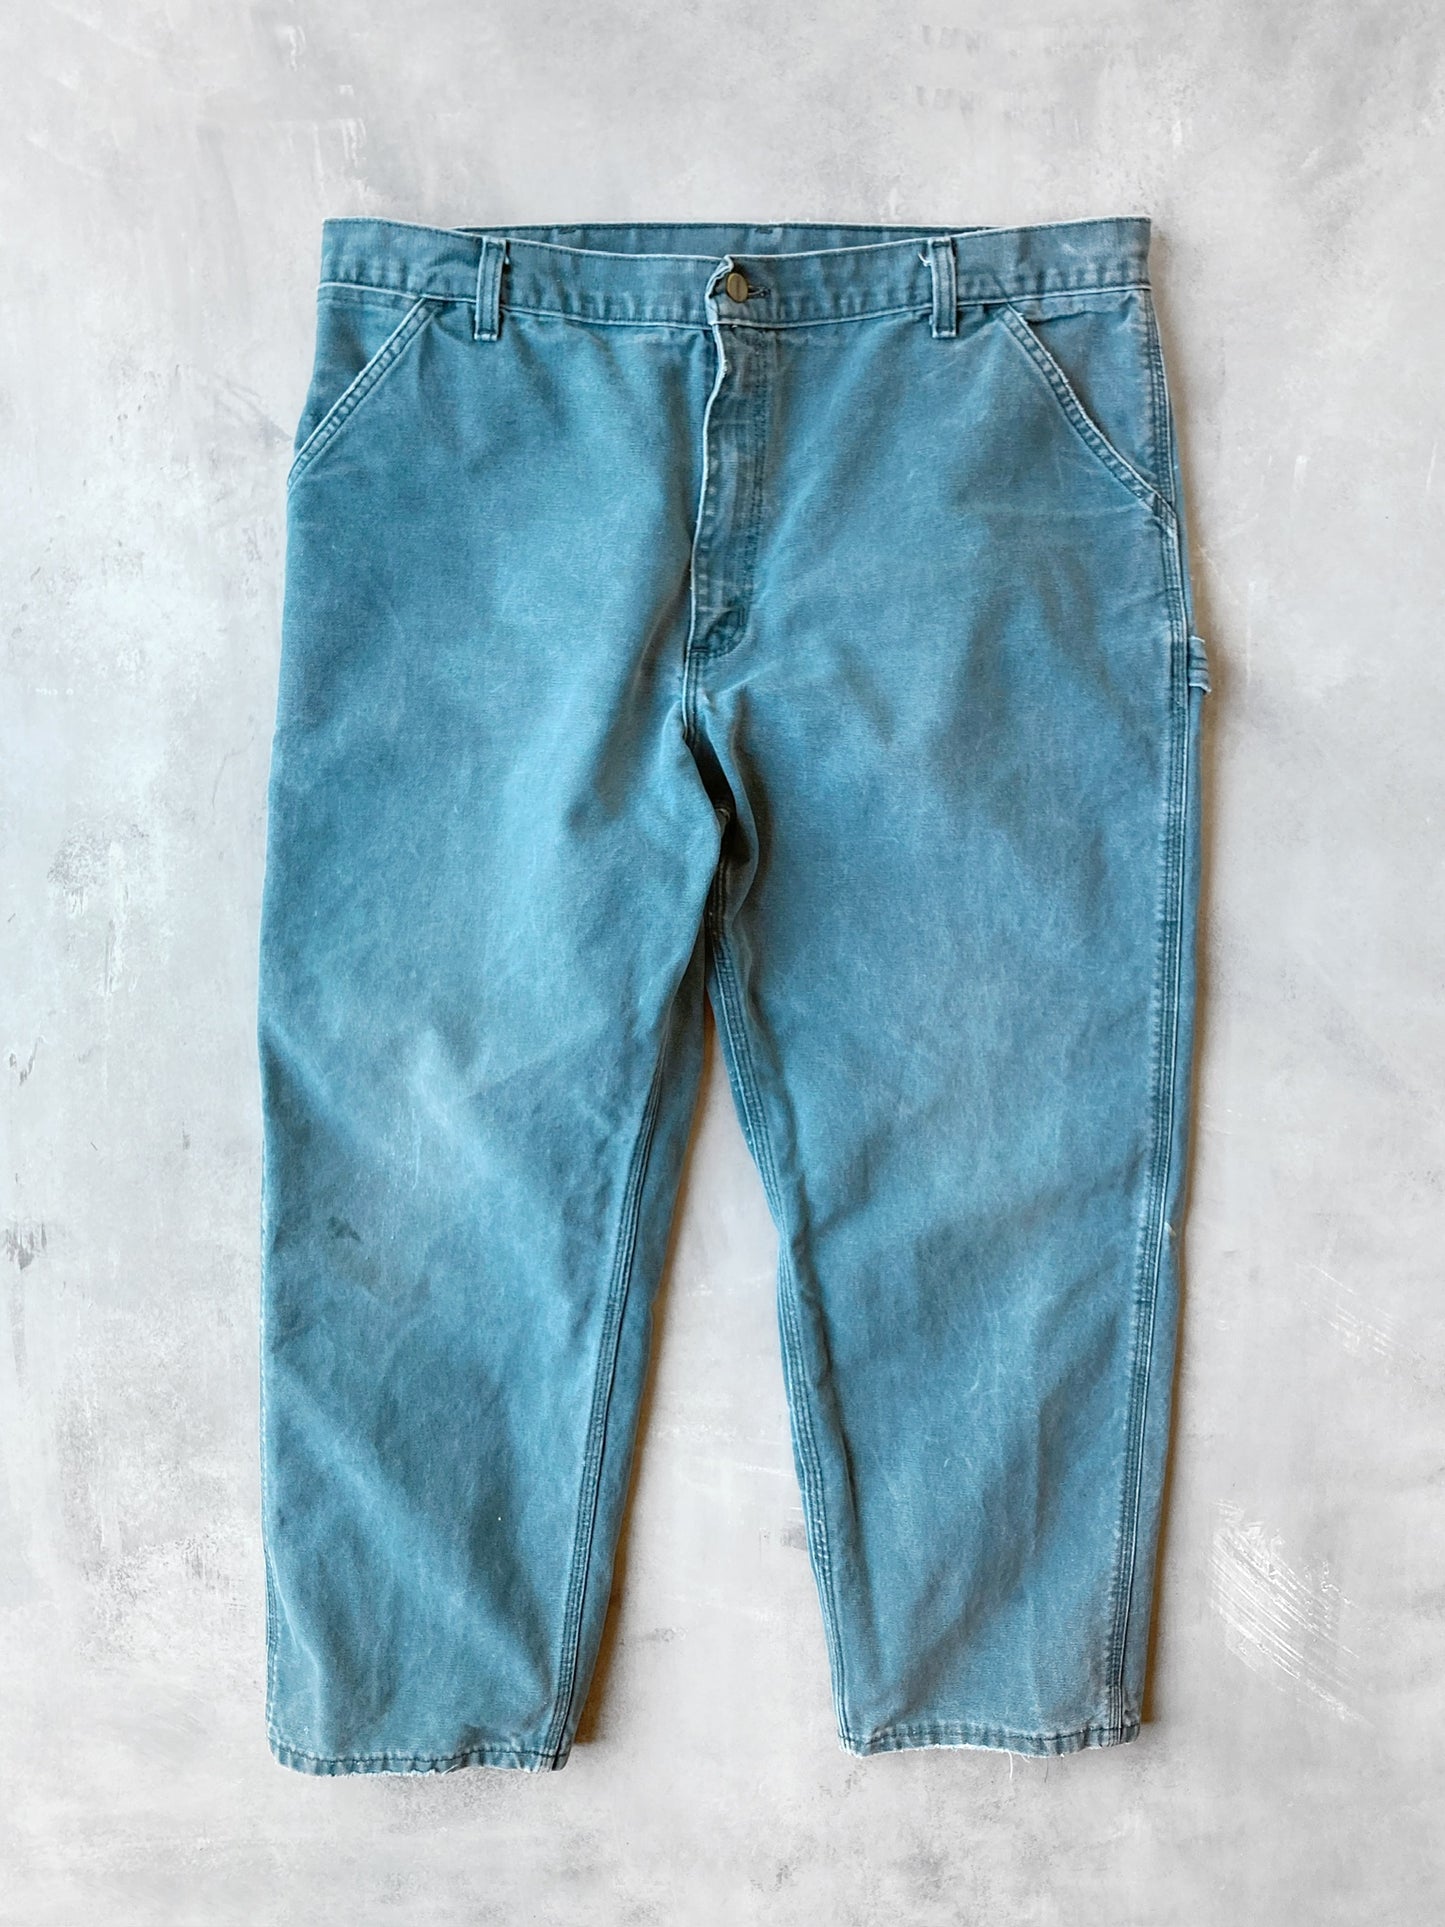 Teal Carhartt Carpenter Jeans 90's - 40x29